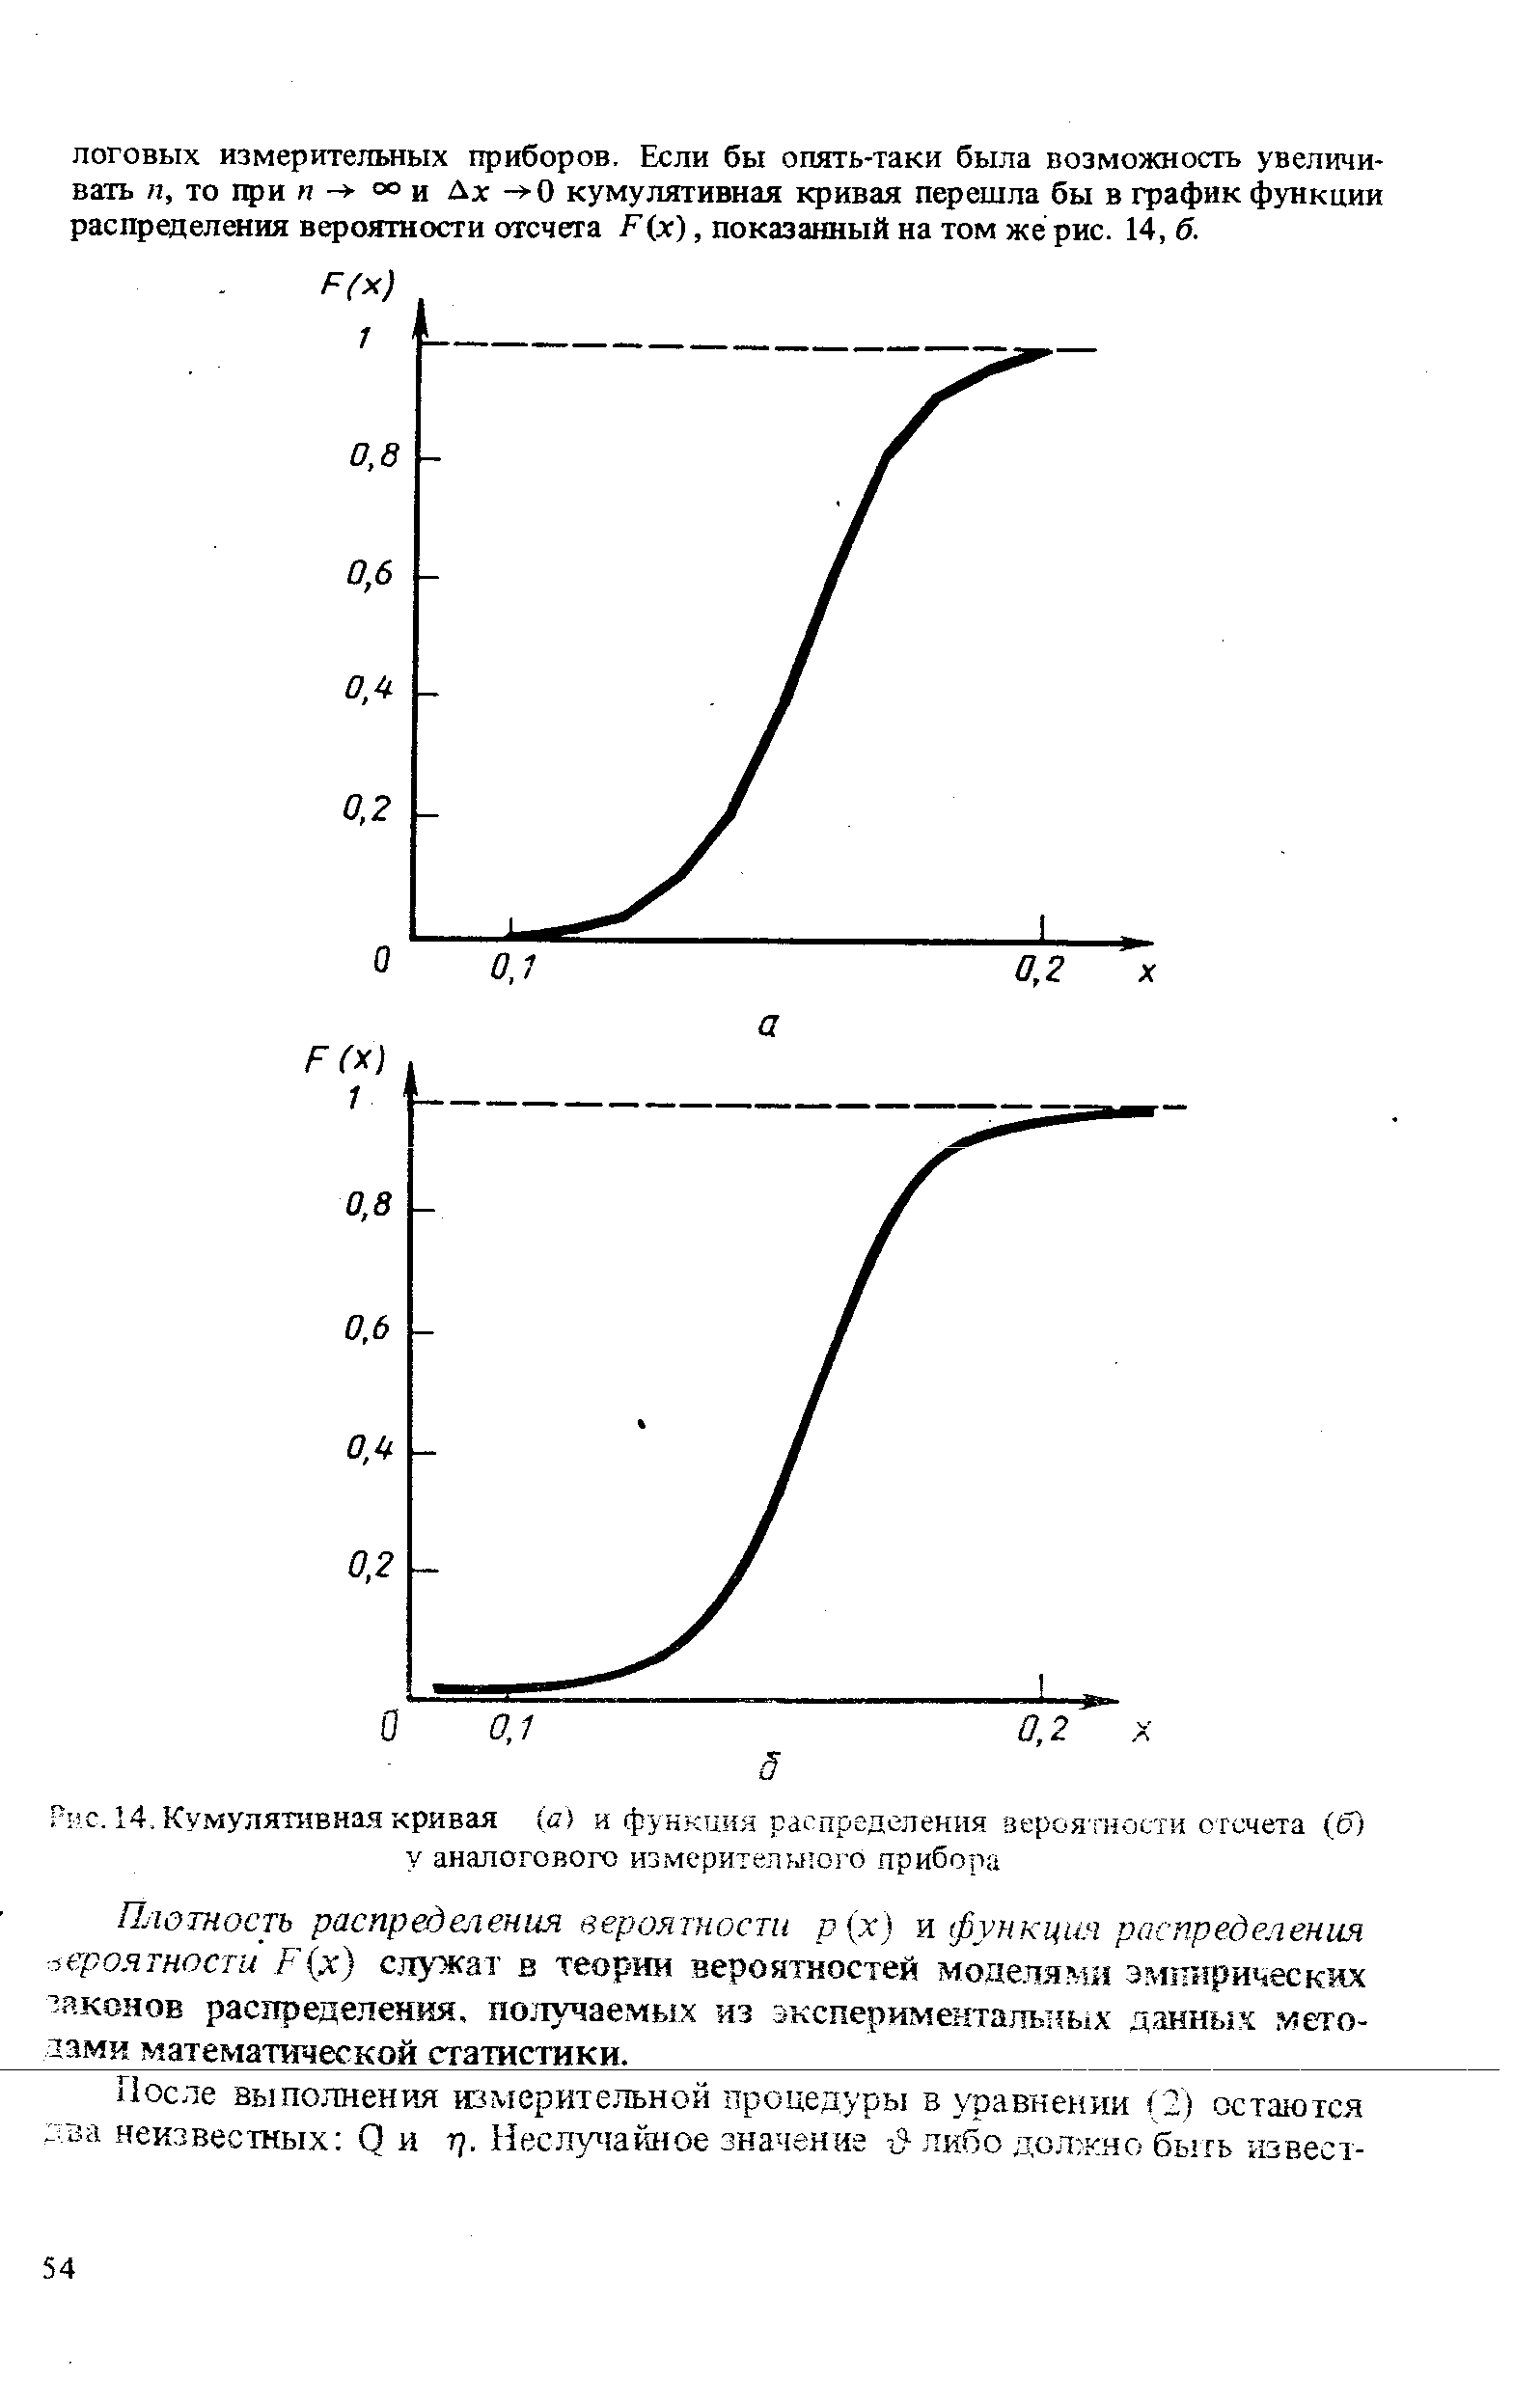 Рис. 14. Кумулятивная кривая (а) и функция распределения вероятности отсчета (б) у аналогового измерительного прибора
